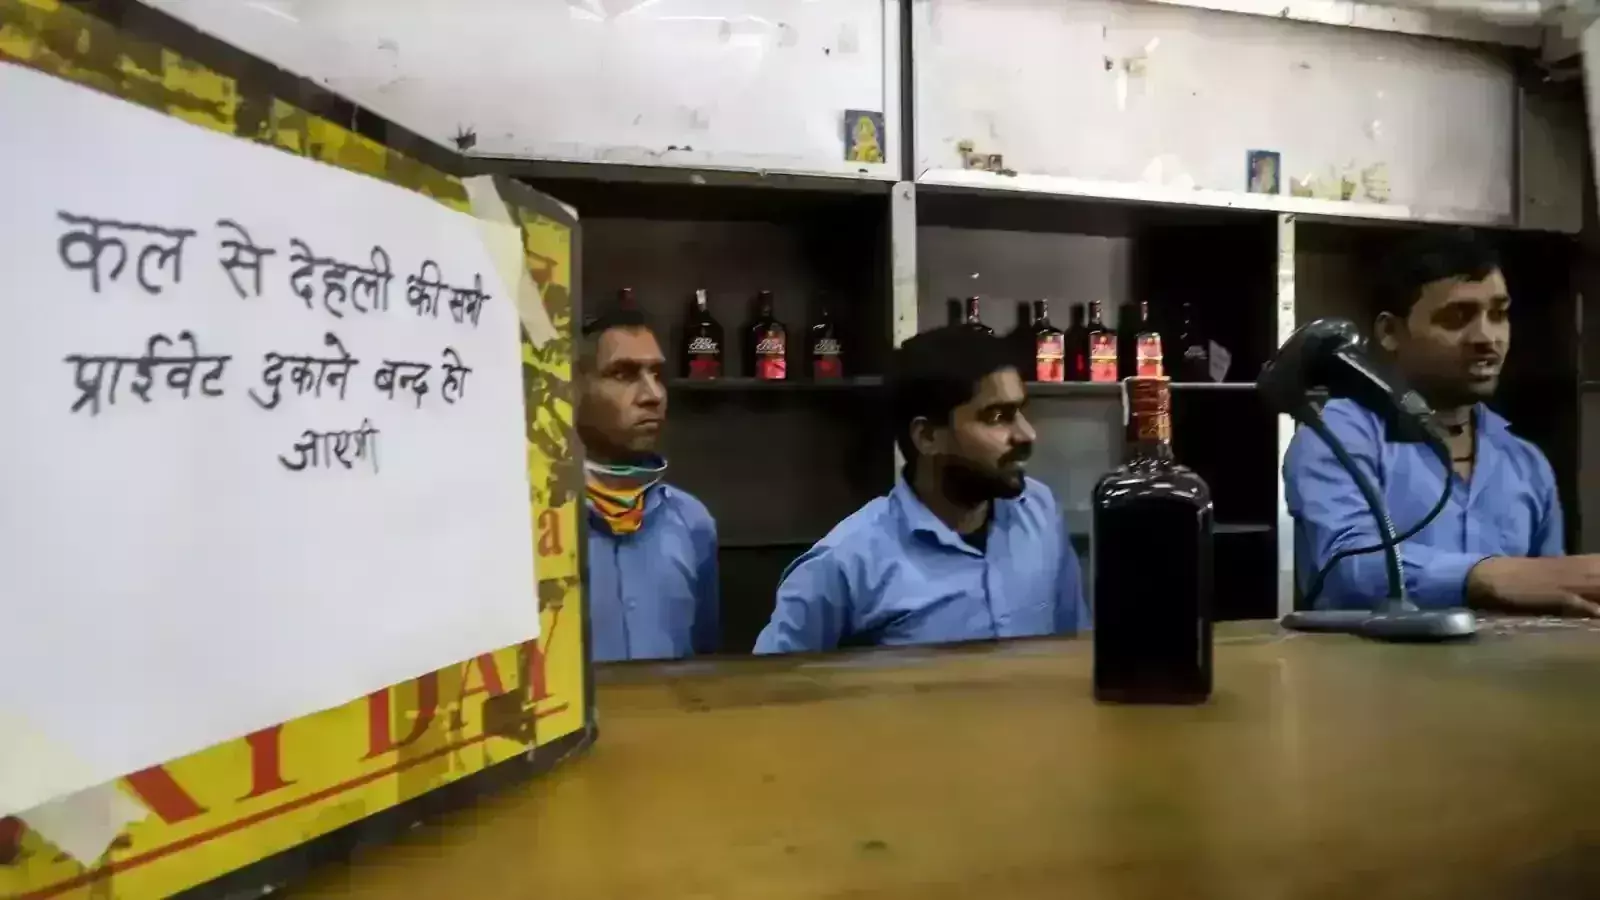 Delhi to close 600 Govt liquor vends as part of its exit plan